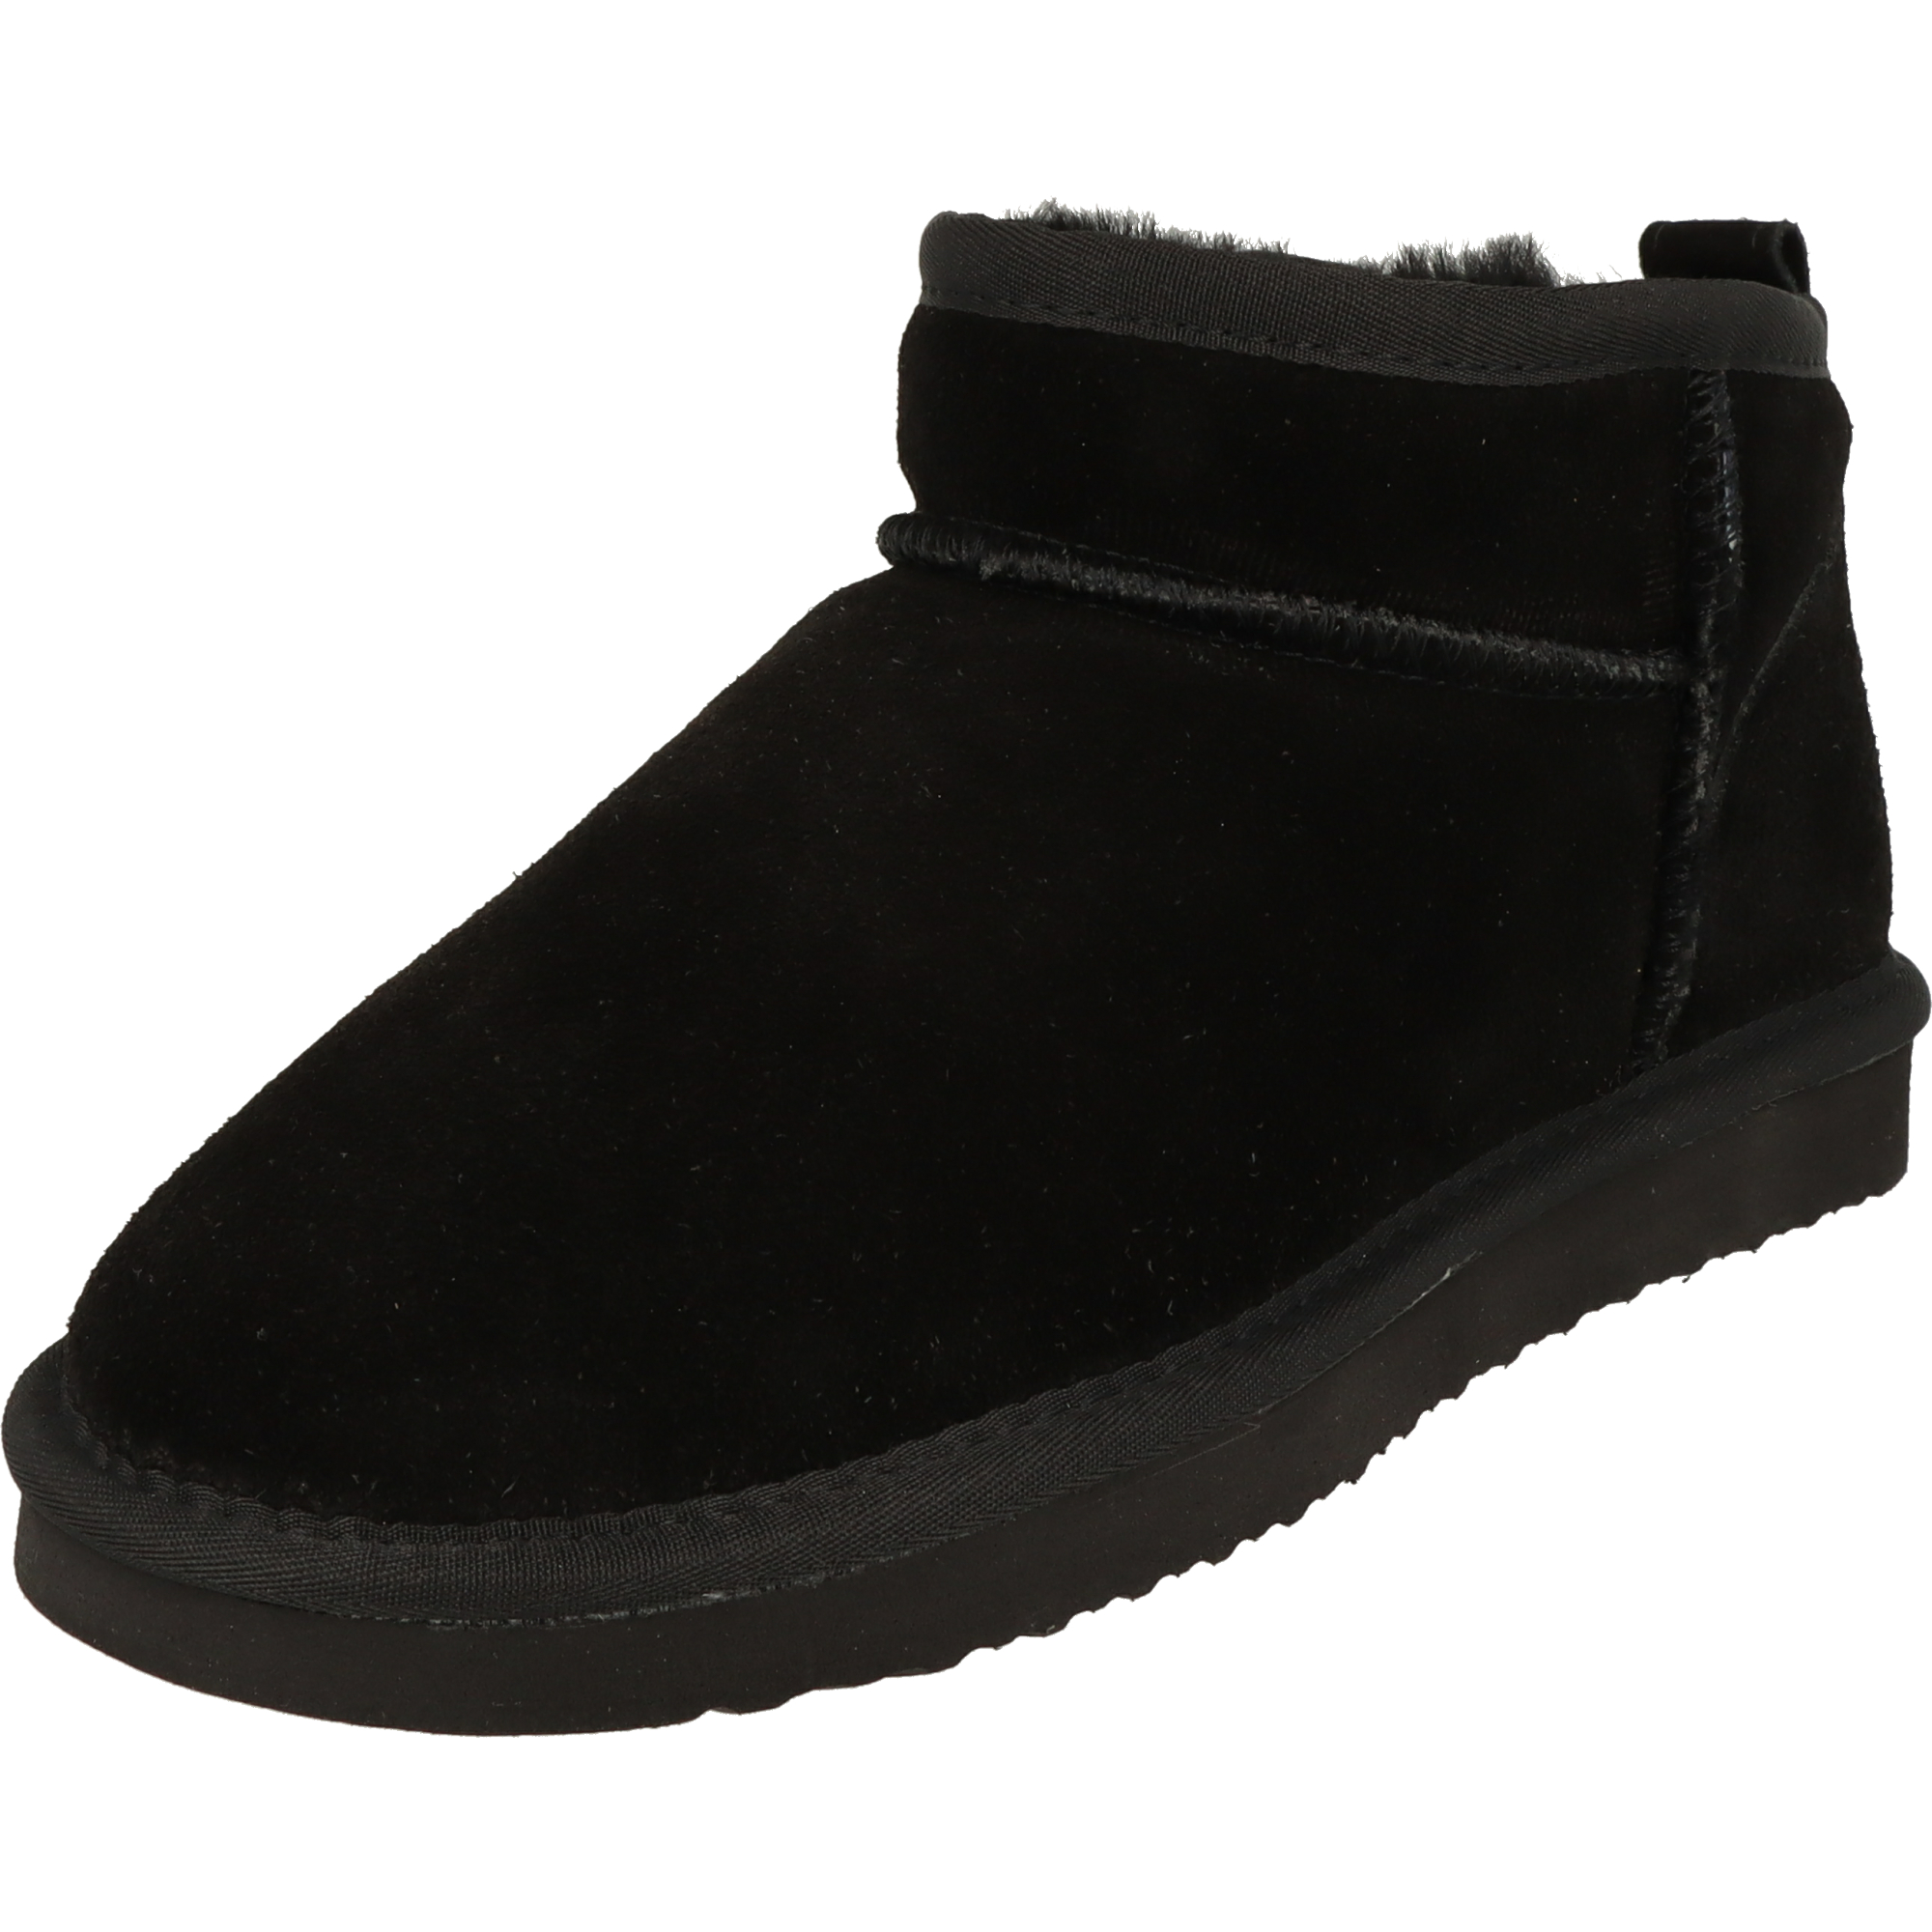 Piece Of Mind Damen Schuhe Winter Low-Cut Leder Boots 264-718 gefüttert Black